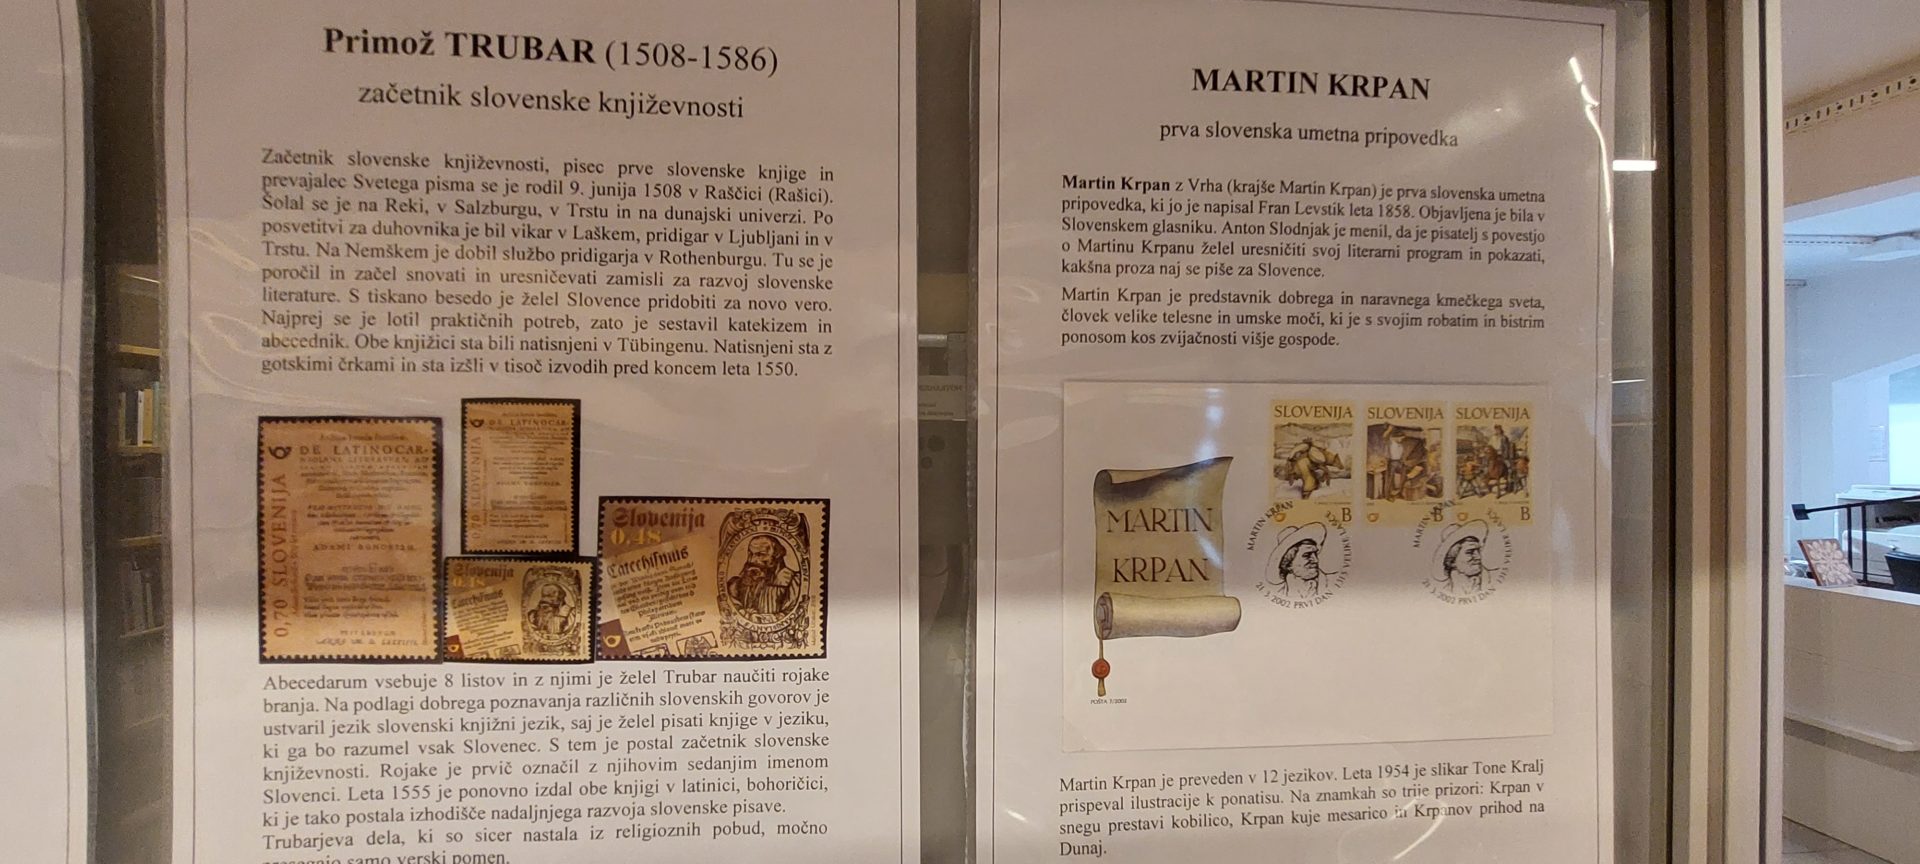 20220524 182646 - Literatura na znamkah - razstava znamk iz zbirke Marinke Cempre Turk